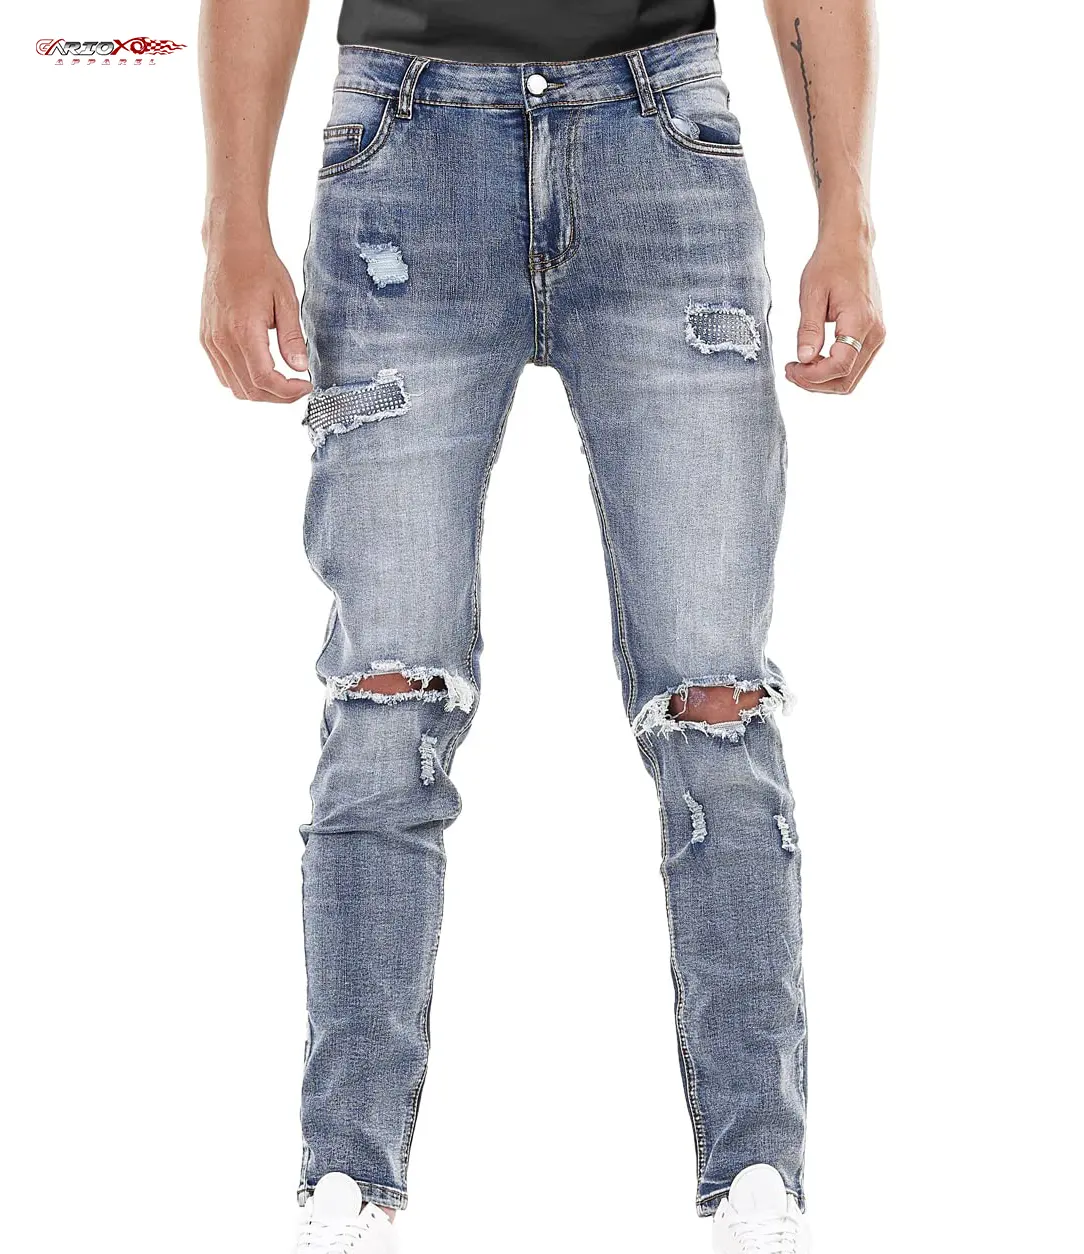 Jeans attillati molto elasticizzati per gli uomini elastici offrono mobilità rilassata senza restrizioni distrutti Jeans gamba dritta